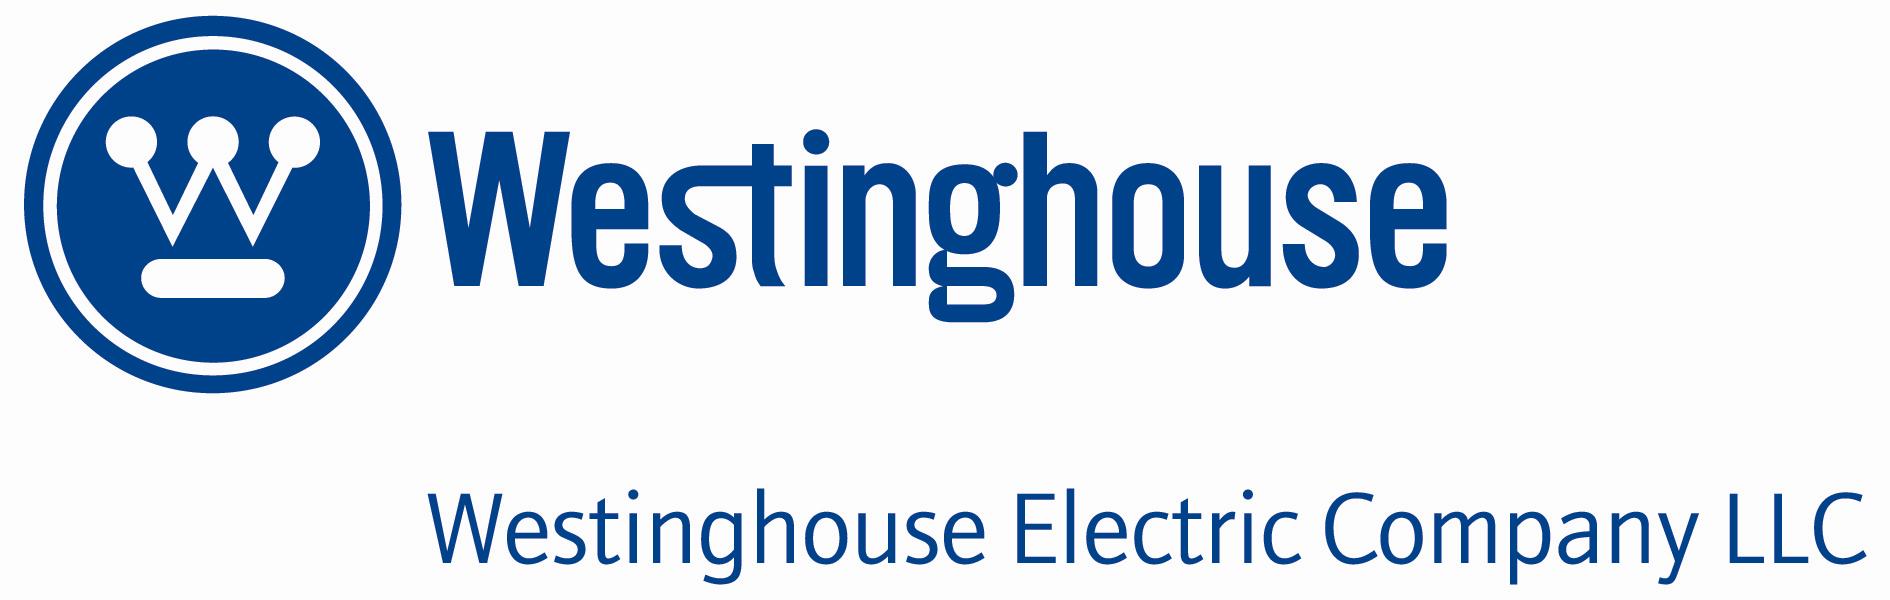 westinghouse_logo